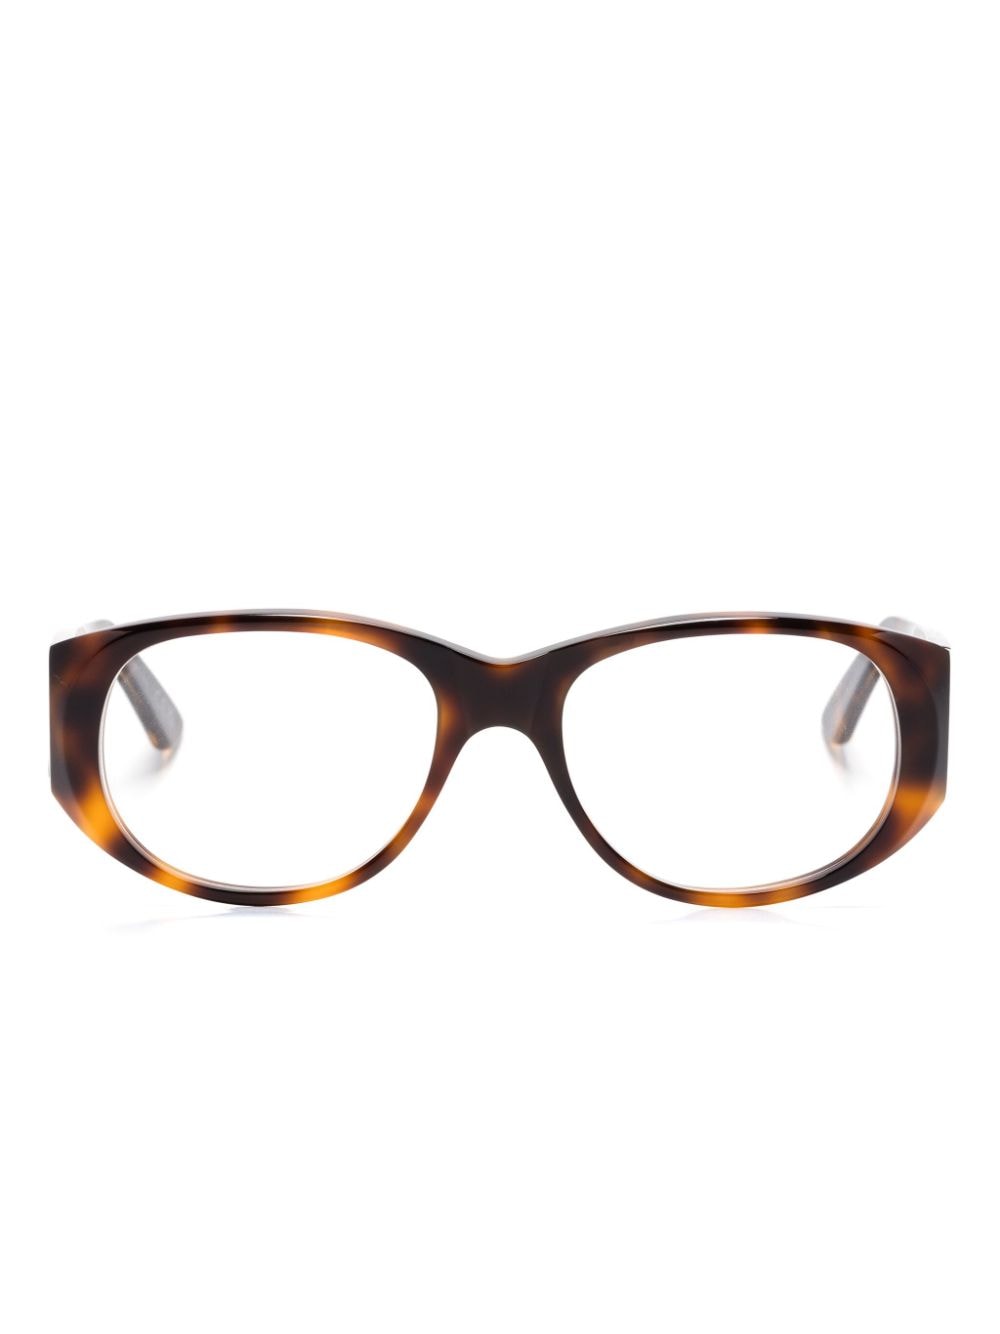 Marni Eyewear Orinoco River Brille mit eckigem Gestell - Braun von Marni Eyewear